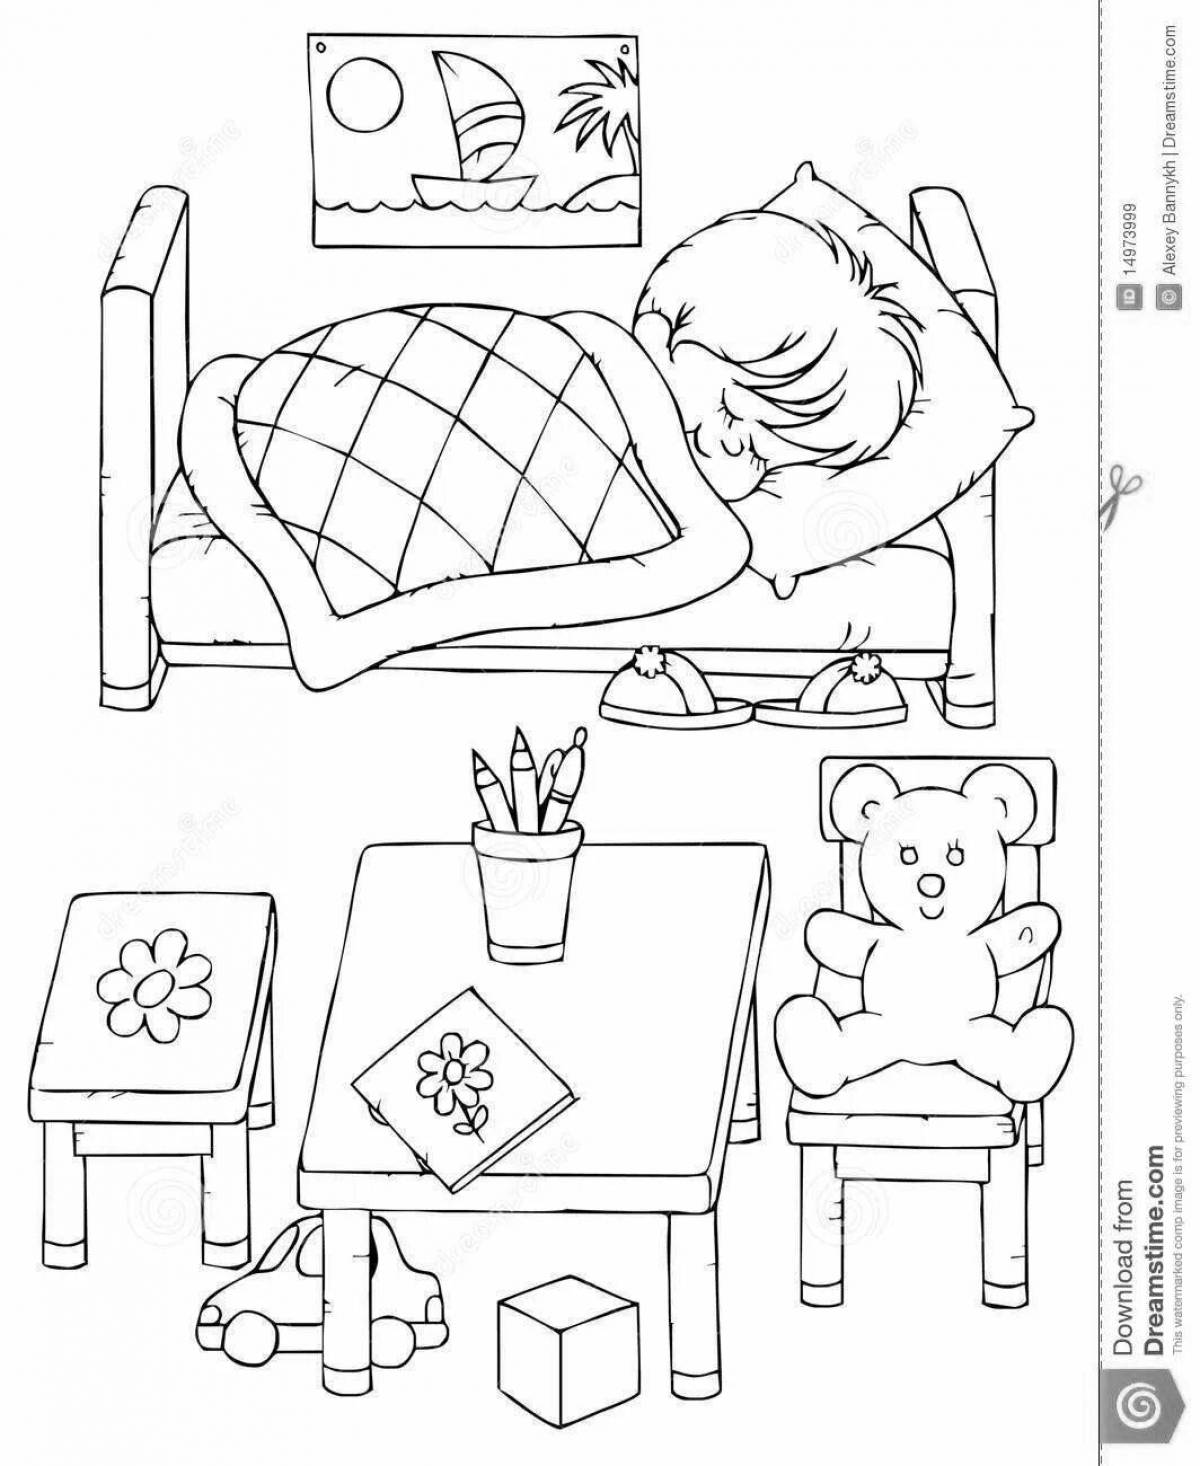 Exquisite sleeping children coloring book